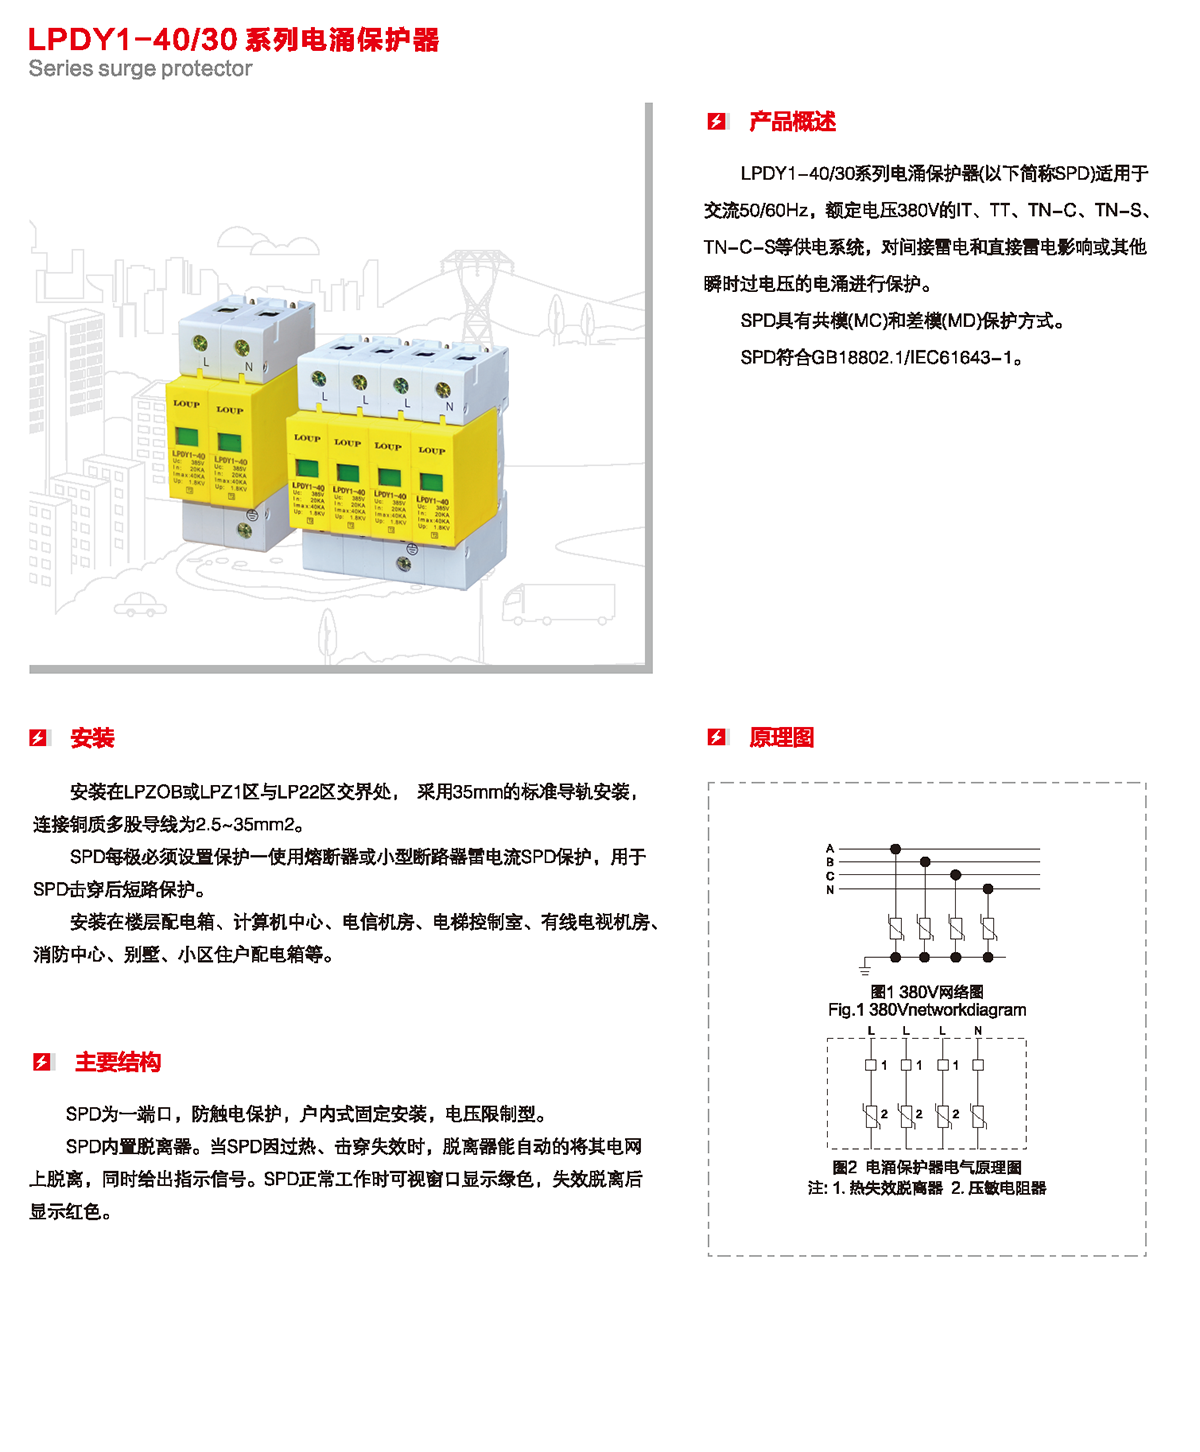 LPDY1-40/30系列電涌保護器產品詳情